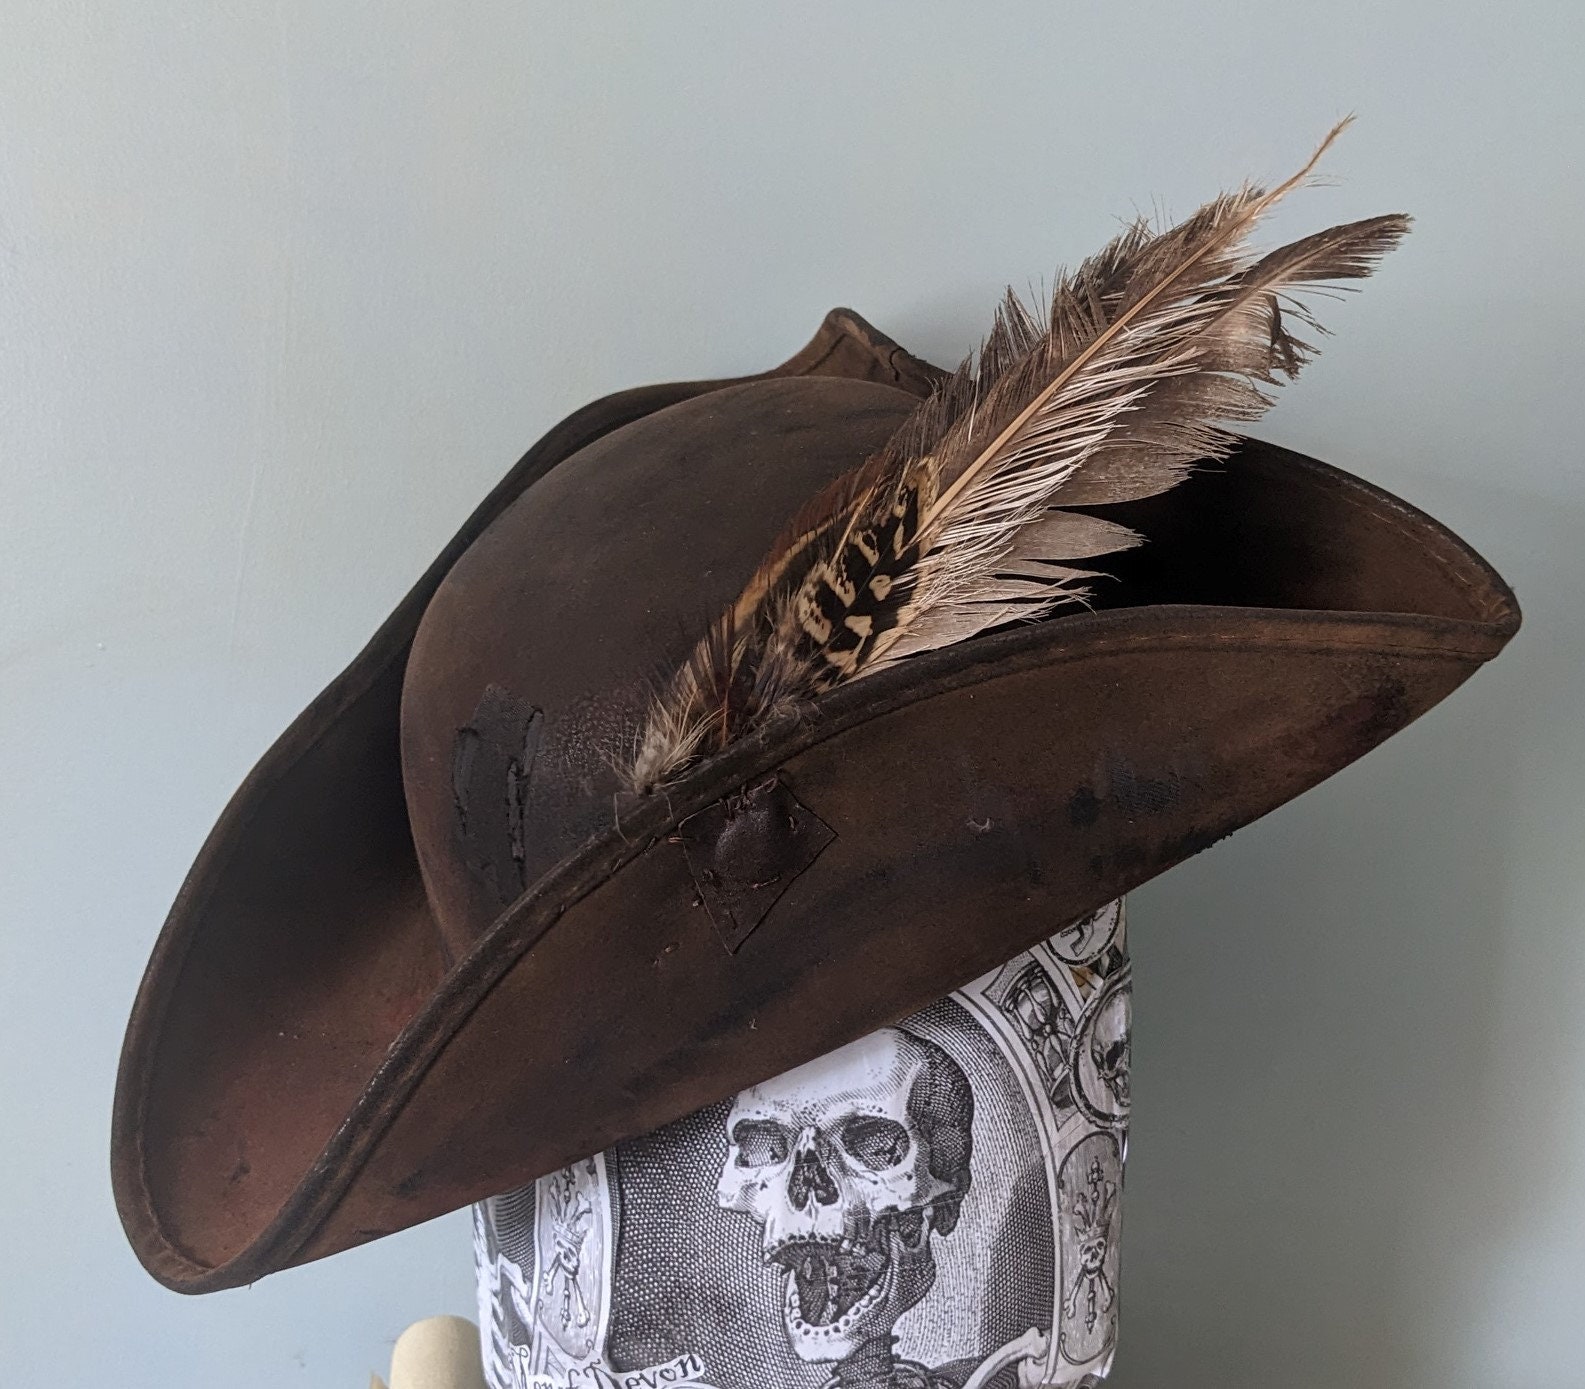 NauticalMart Period Clothing - Leather Cavalier Hat - Medium (Left Brim Up)  Black